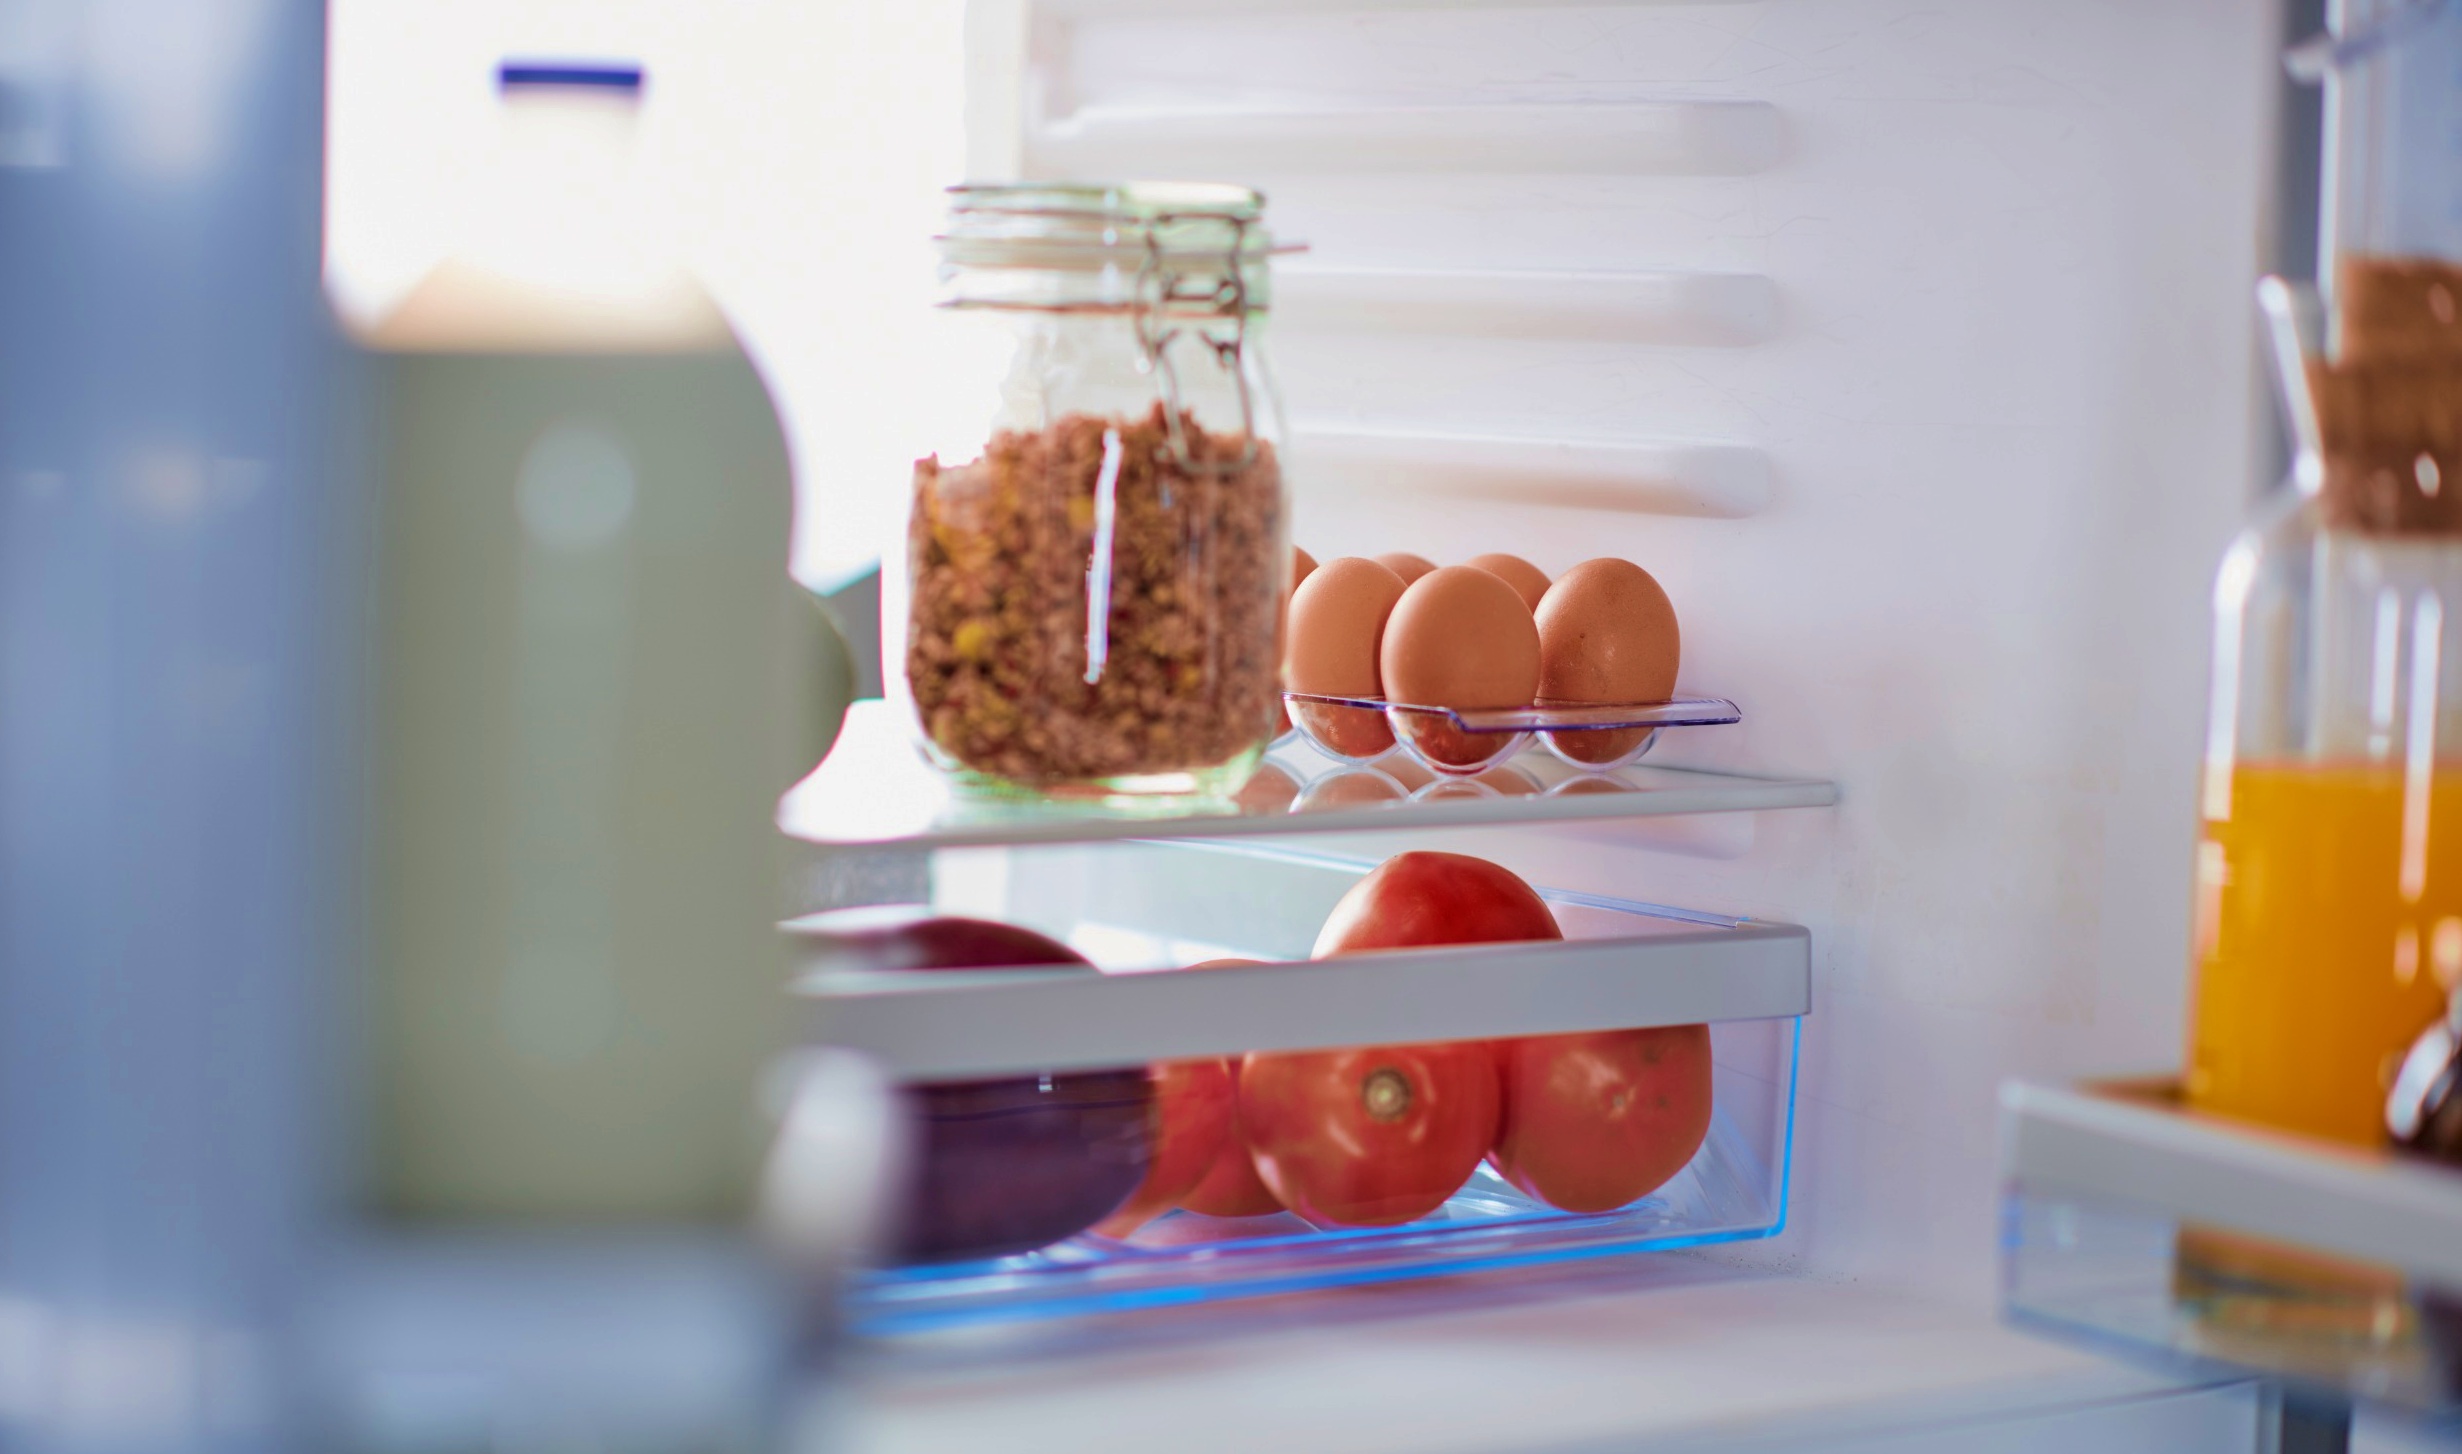 come disporre gli alimenti in frigorifero